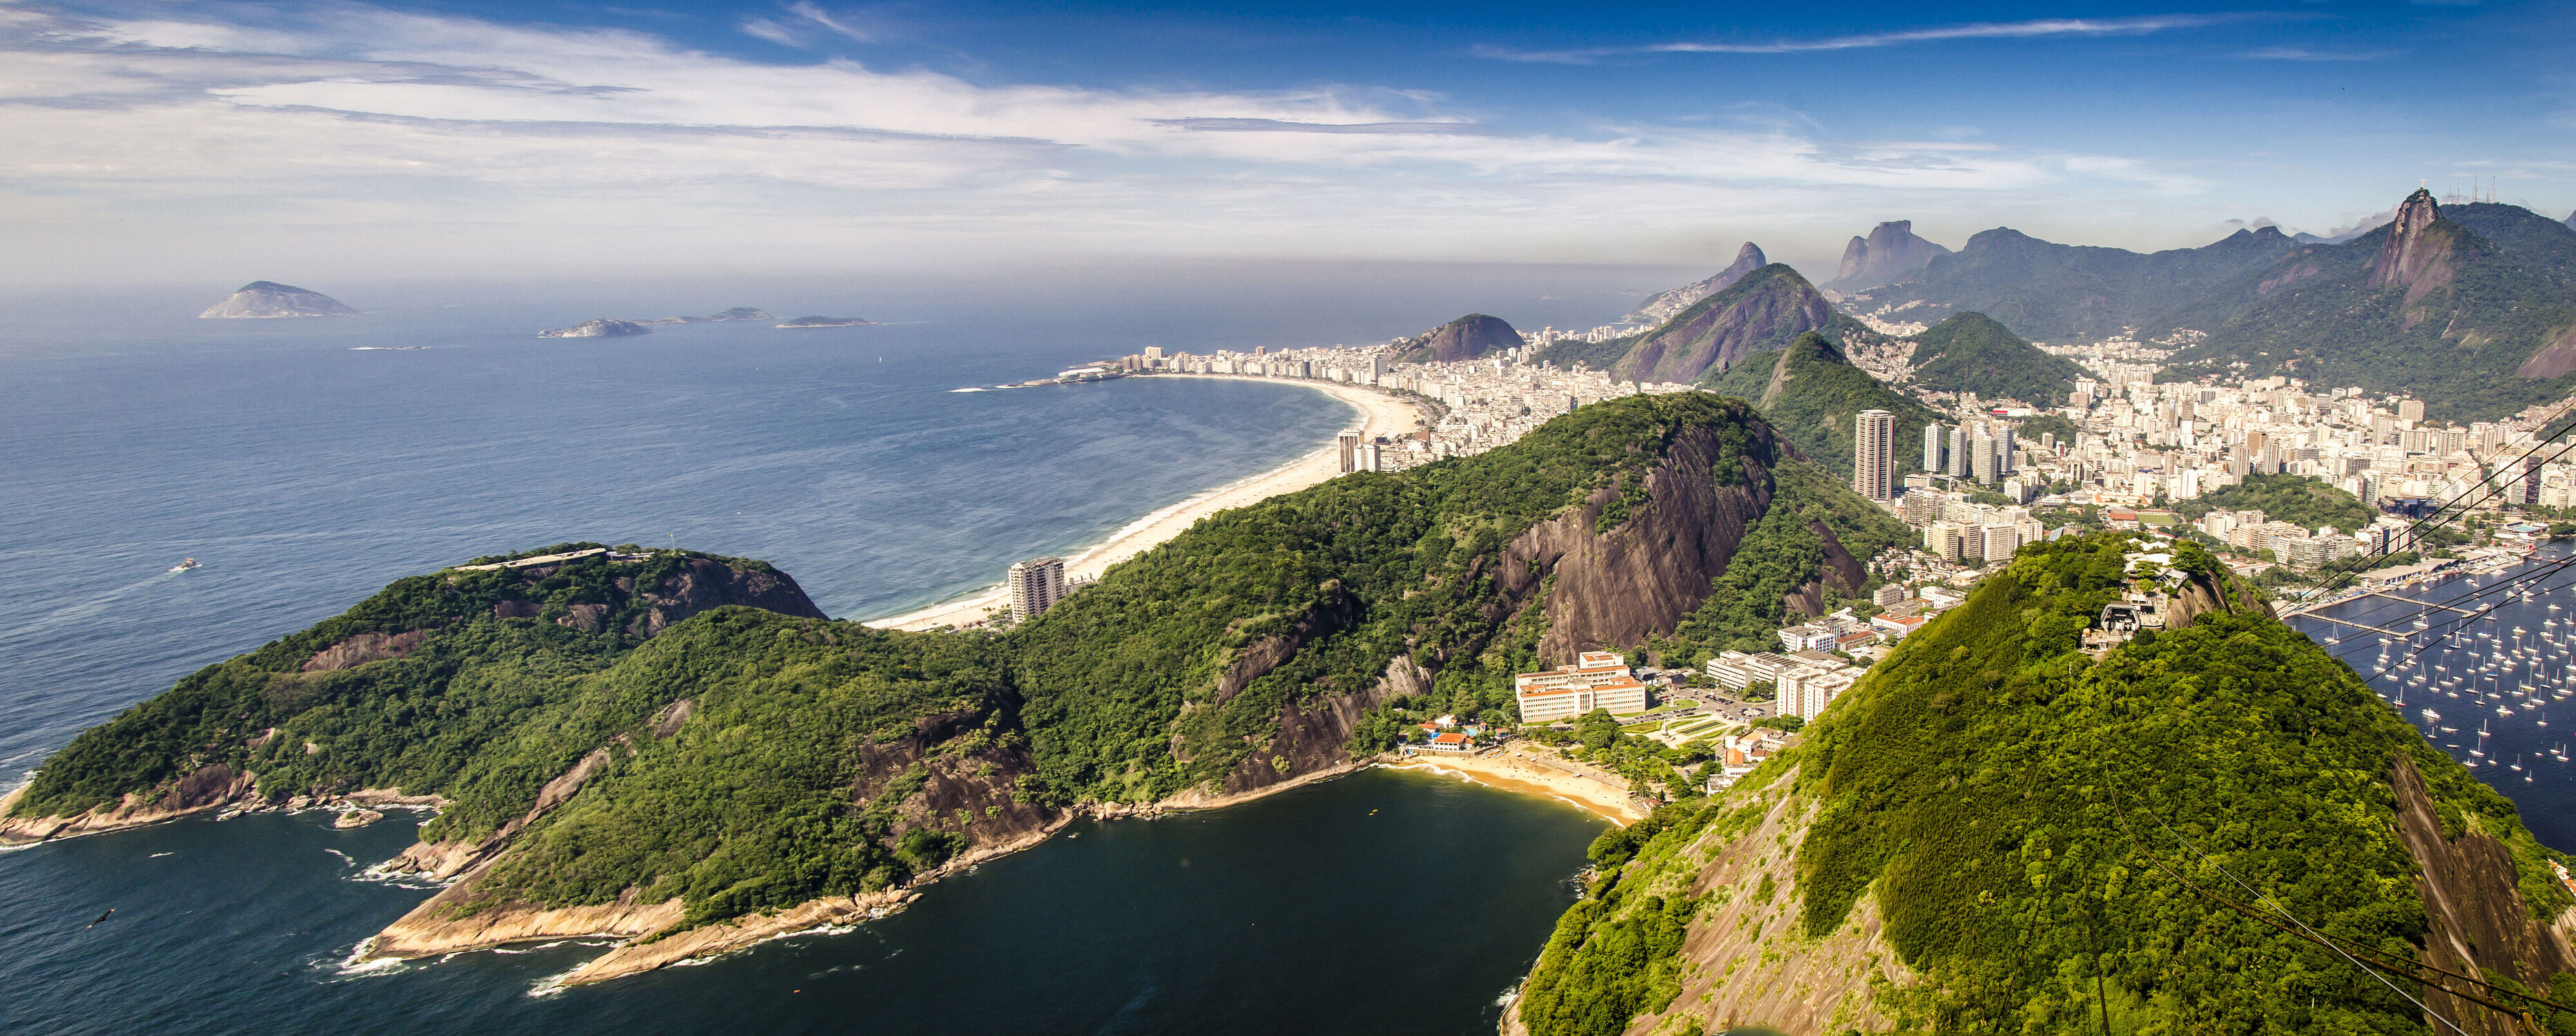 Bild mit Berge und Hügel, Städte, Meer, Landschaft, Schönheit, Bucht, brasilien, rio de janeiro